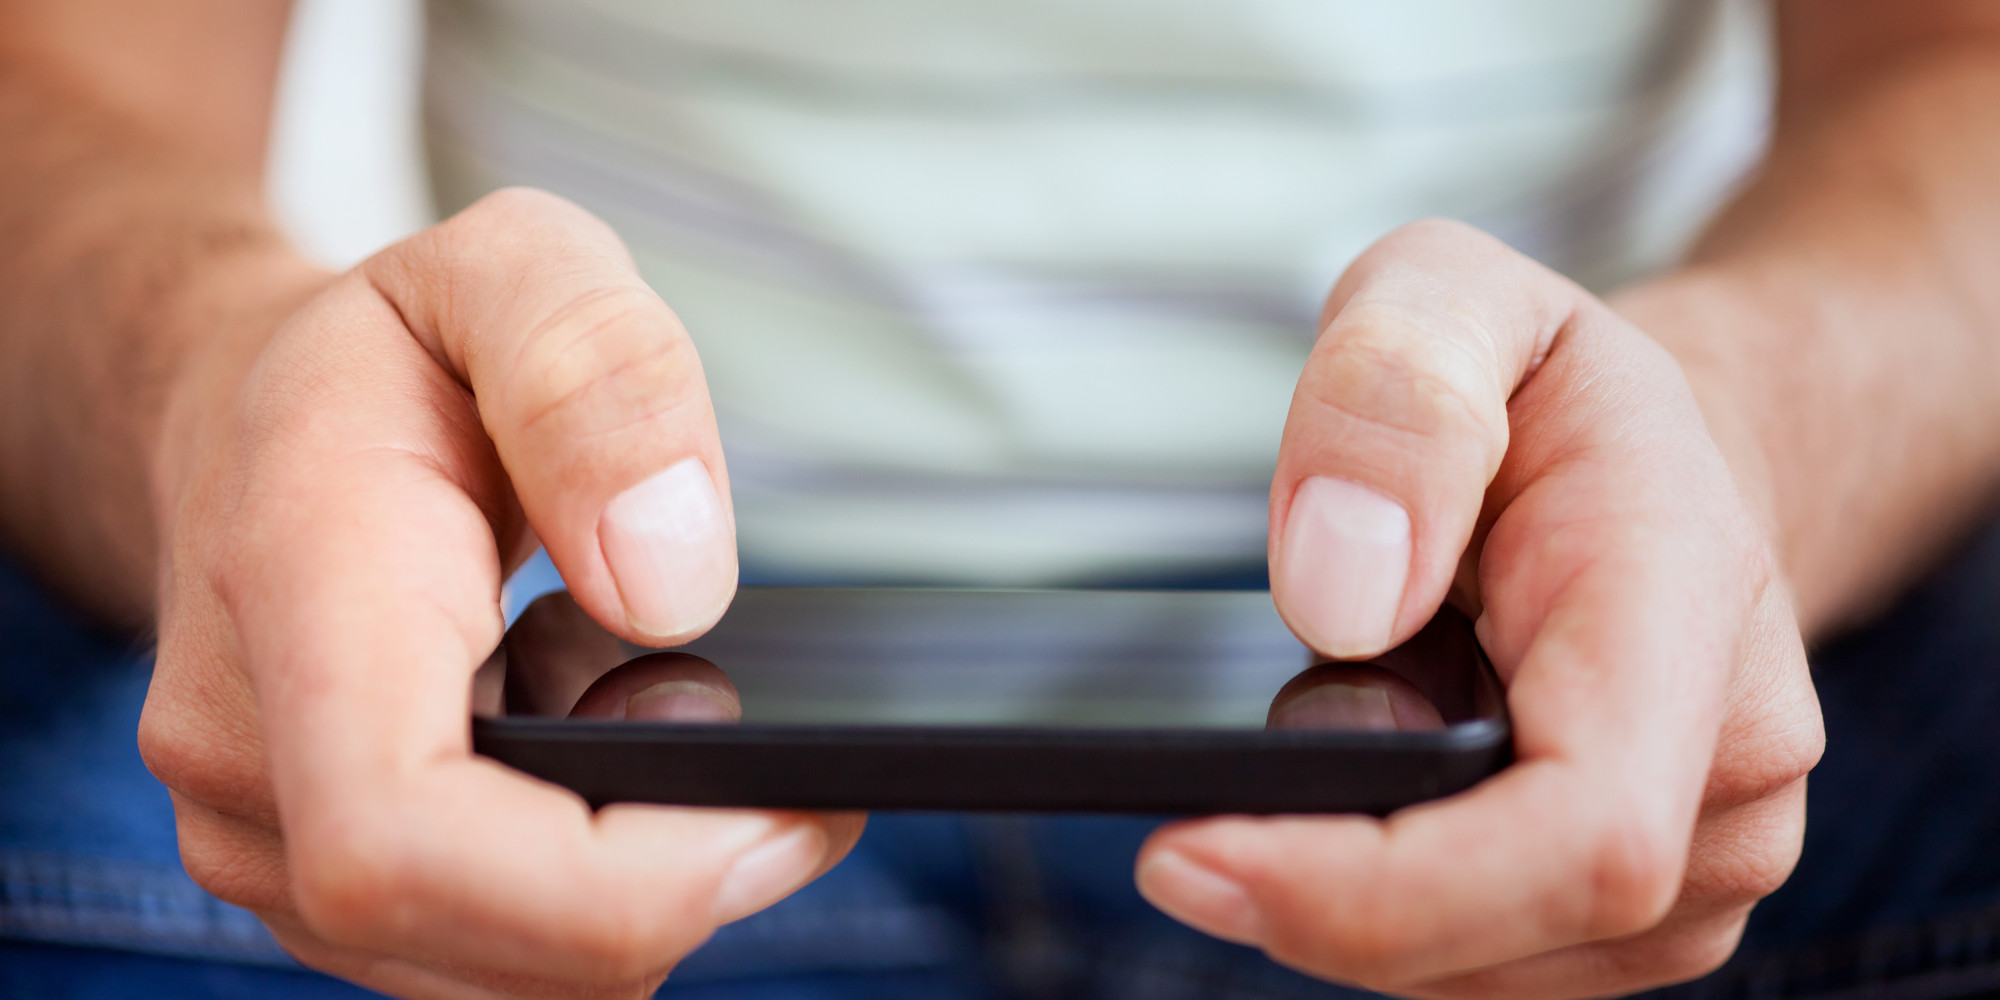 Pengguna Game Mobile Di Seluruh Dunia Habiskan Rp 24 Triliun Per Minggunya Demi Beli "Item"